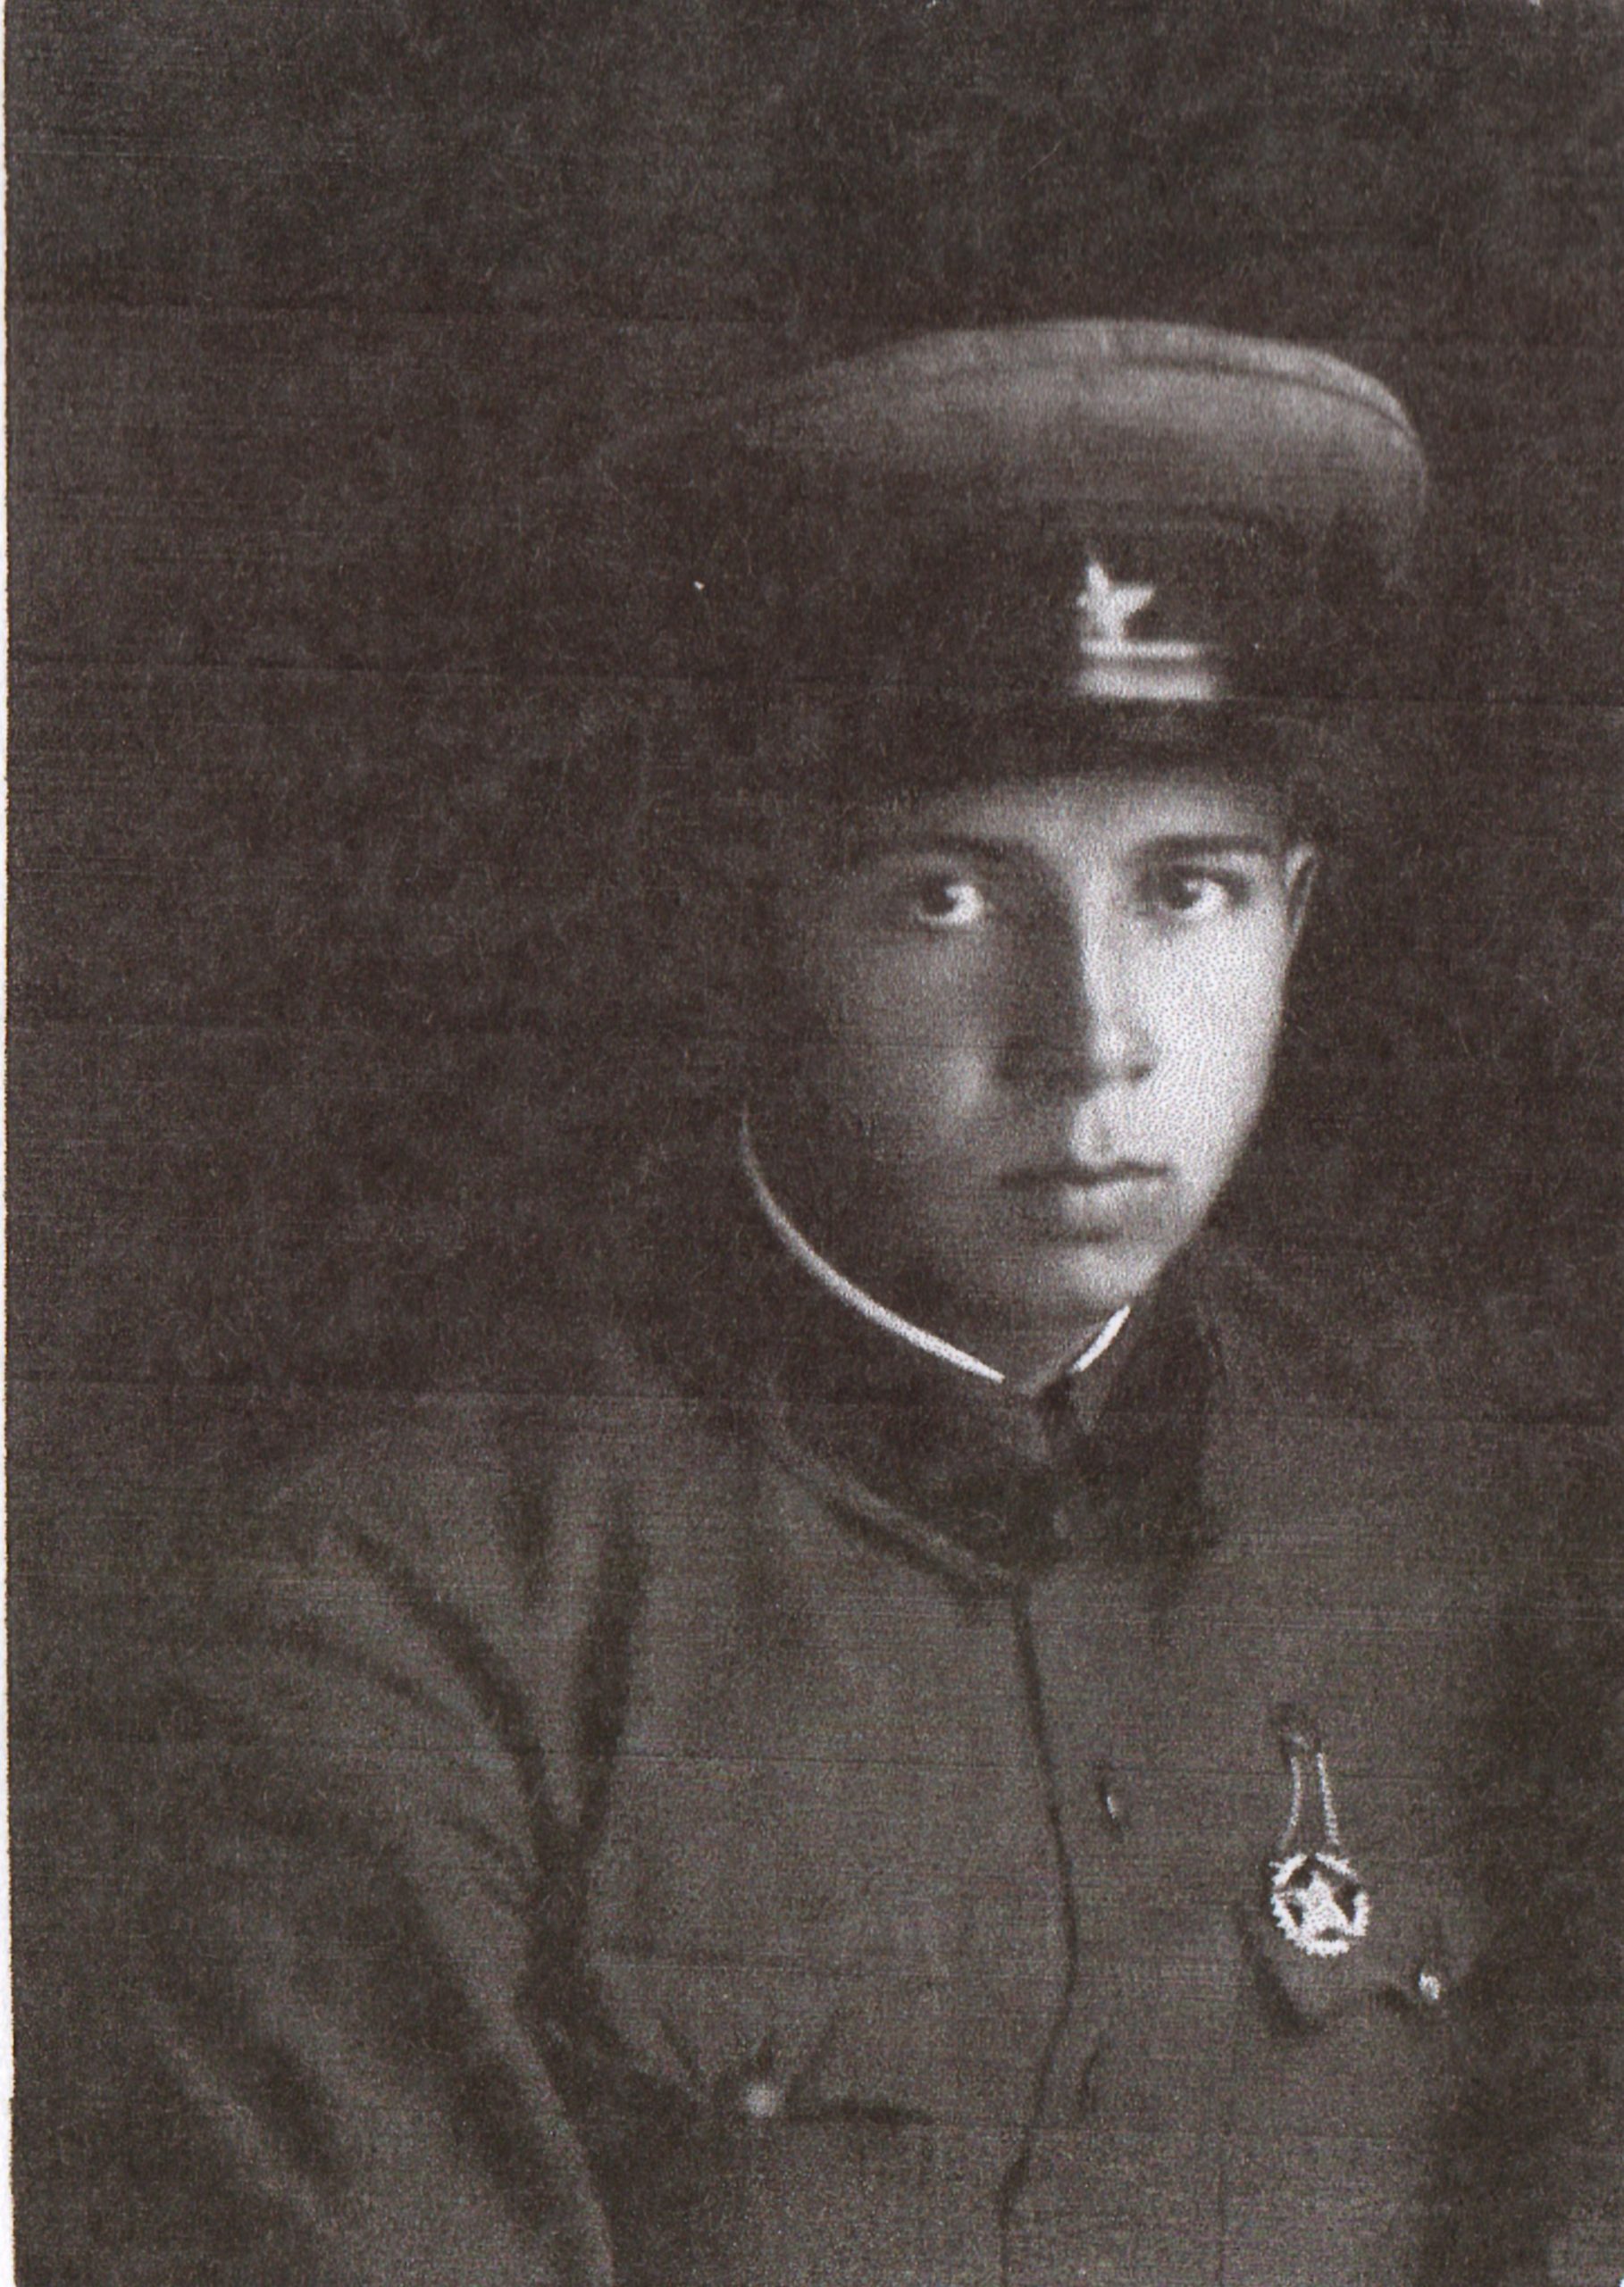 Дубовиков Вячеслав Анатольевич. Довоенное фото из семейного архива